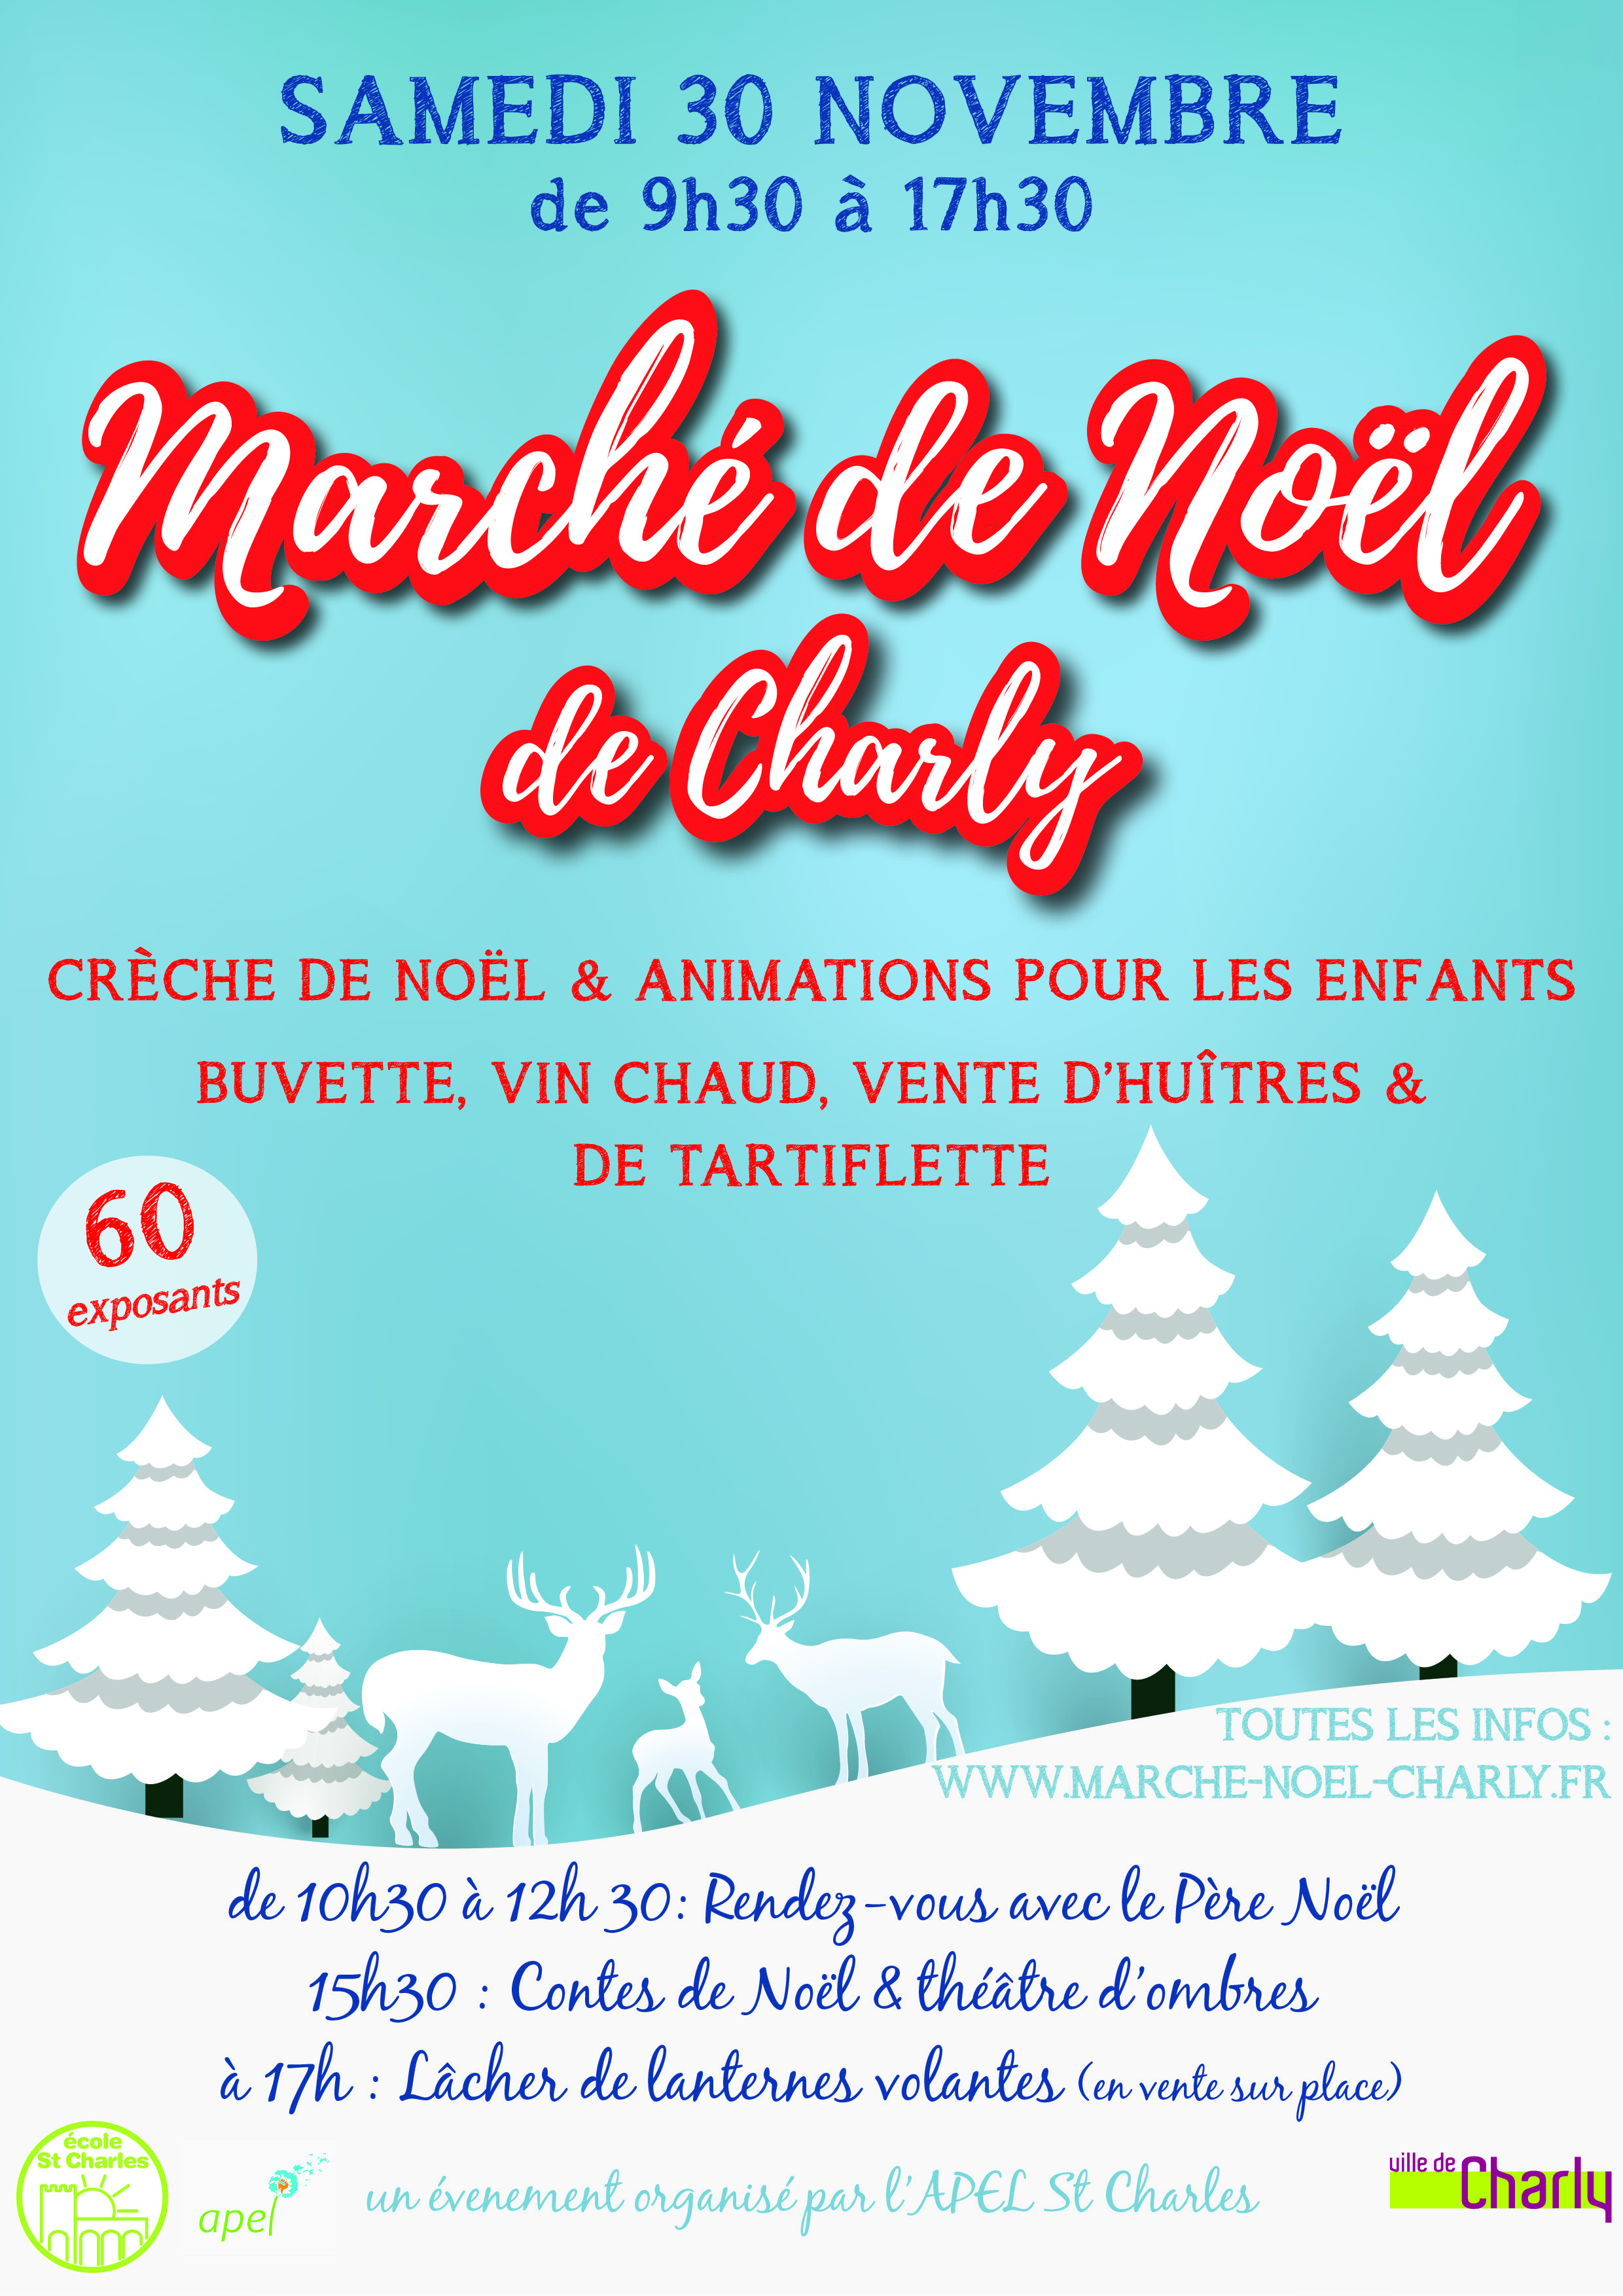 Marché de Noël de Charly